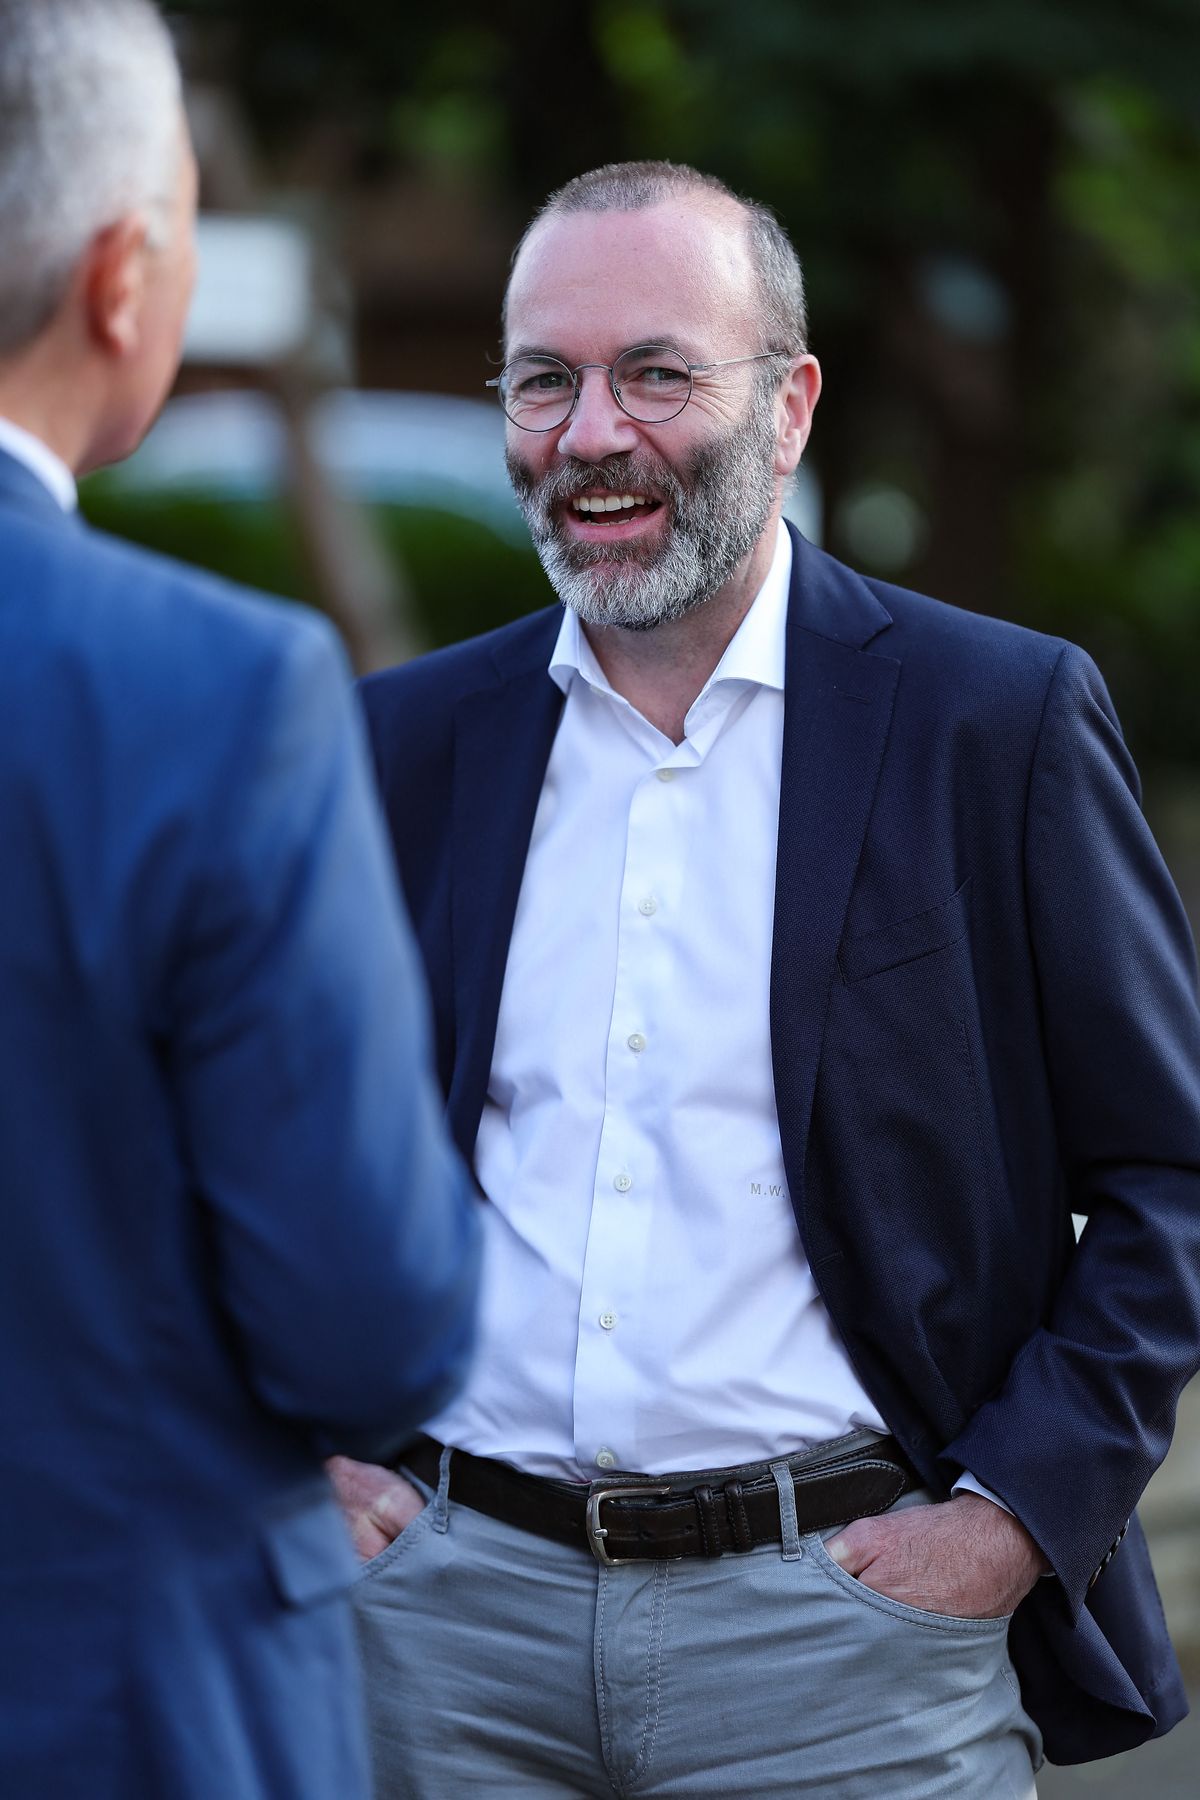 Manfred Weber (r), a CSU európai parlamenti választási vezető jelöltje vendégeket fogad egy választási kampányrendezvényen. (Fotó: DPA /AFP/Daniel Löb)